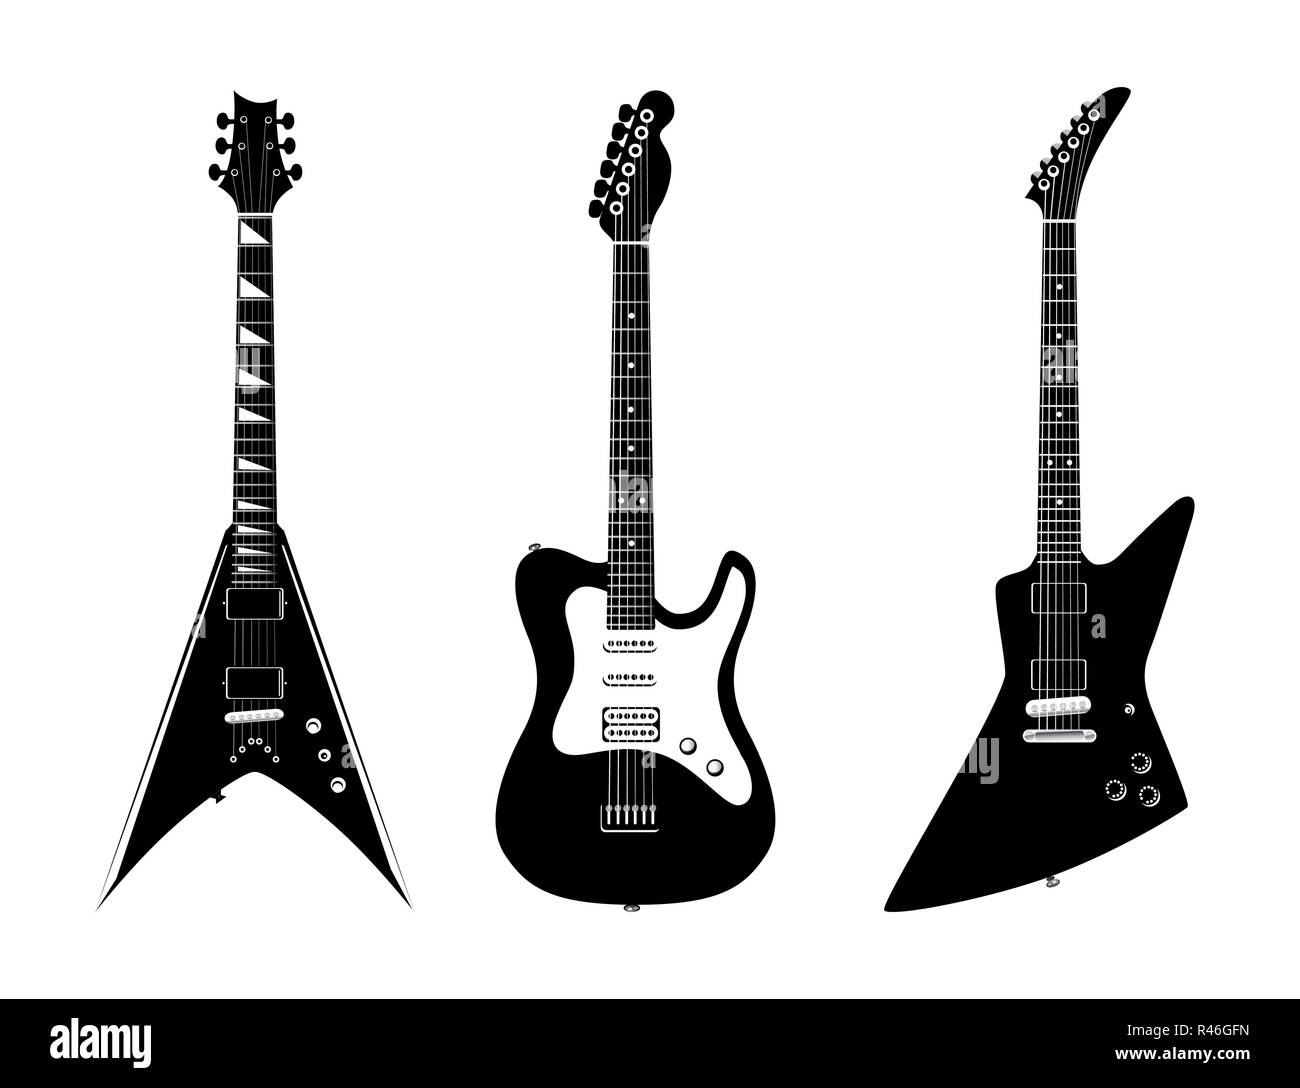 Bei Vector e-gitarren Abbildung Farbe Schwarz auf weißem Hintergrund - Rock Musik instrumente. Stock Vektor